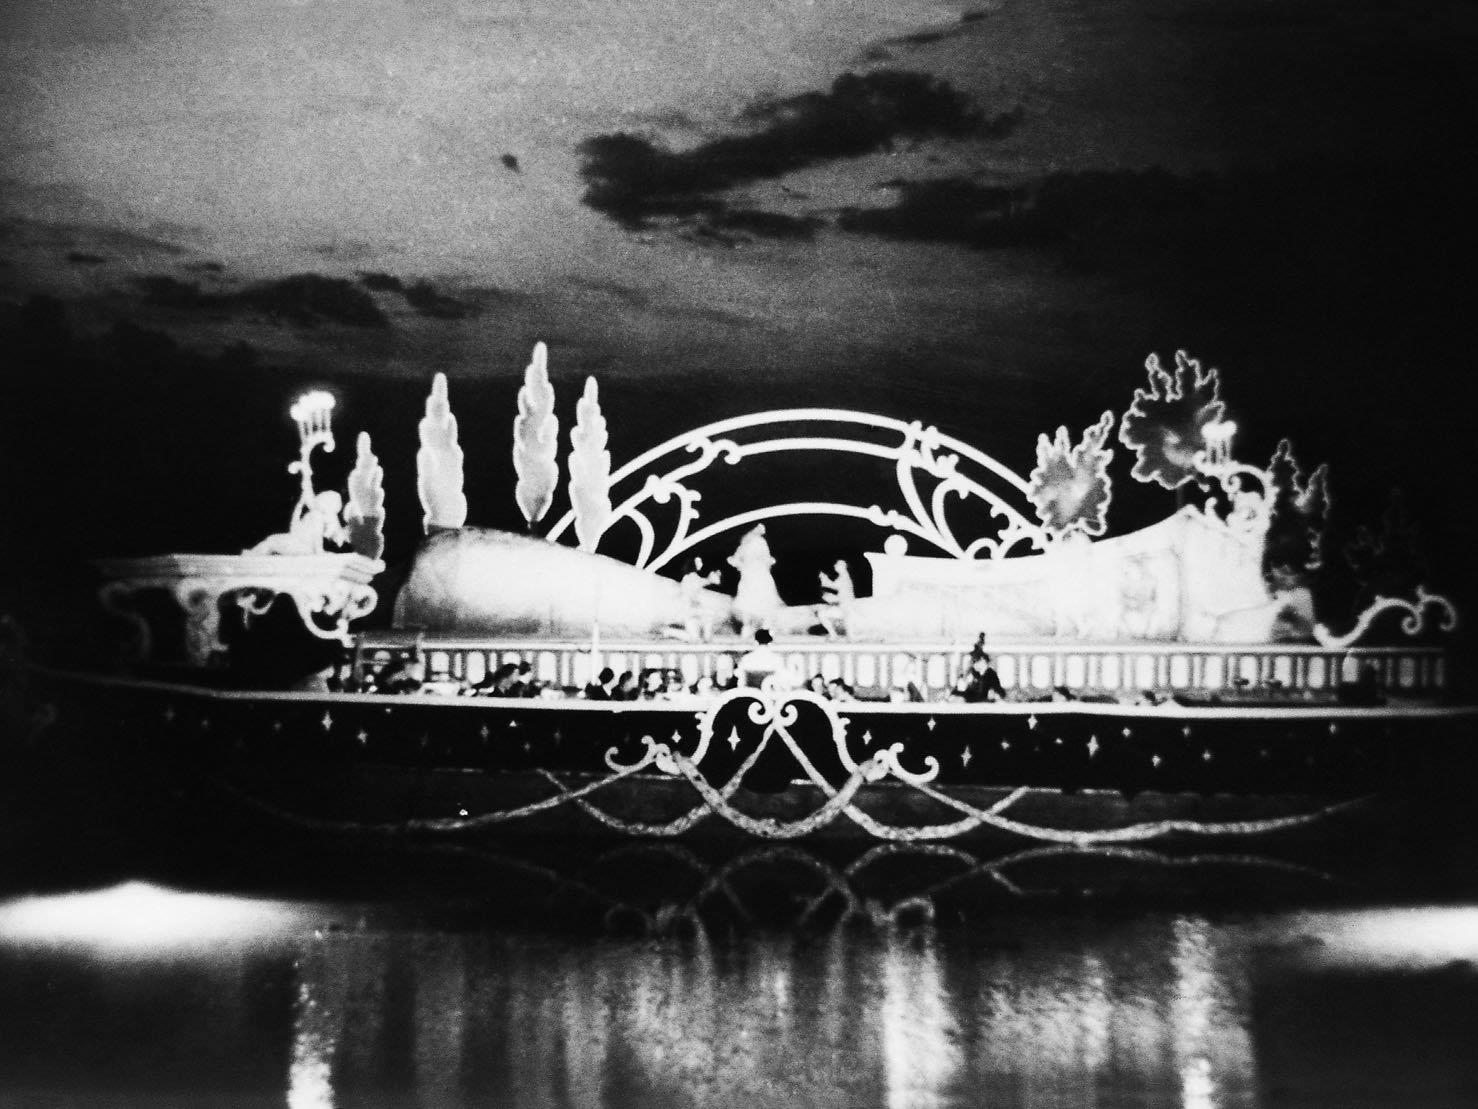 Das einzig erhaltene Bild von der Bregenzer Seebühne im Jahr 1946.